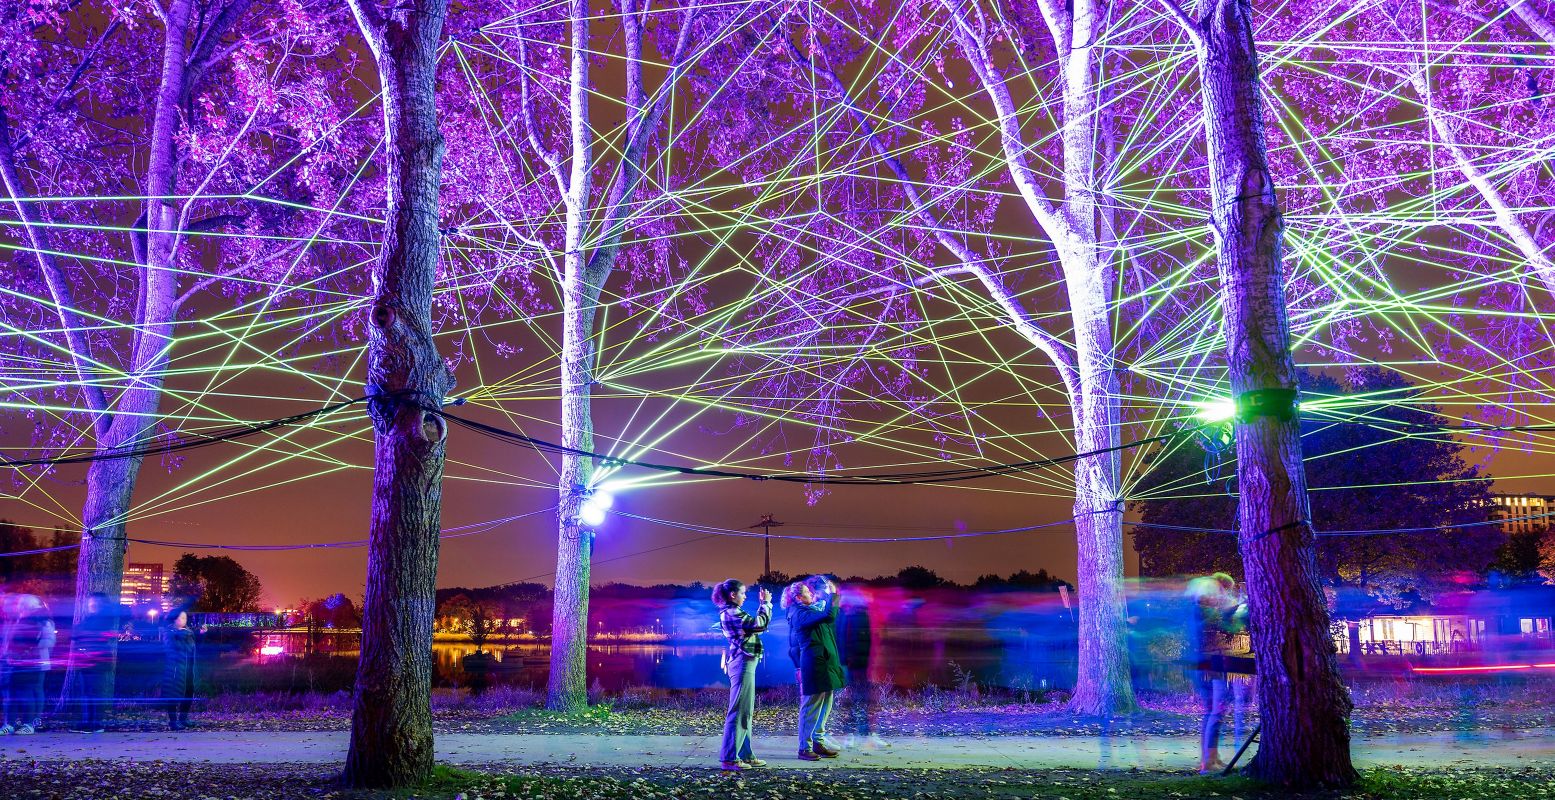 Bijzondere lichtkunst tijdens Alluminous in Almere. Kunstwerk van Tom&Lien Dekyvere. Foto: Matthijs Immink